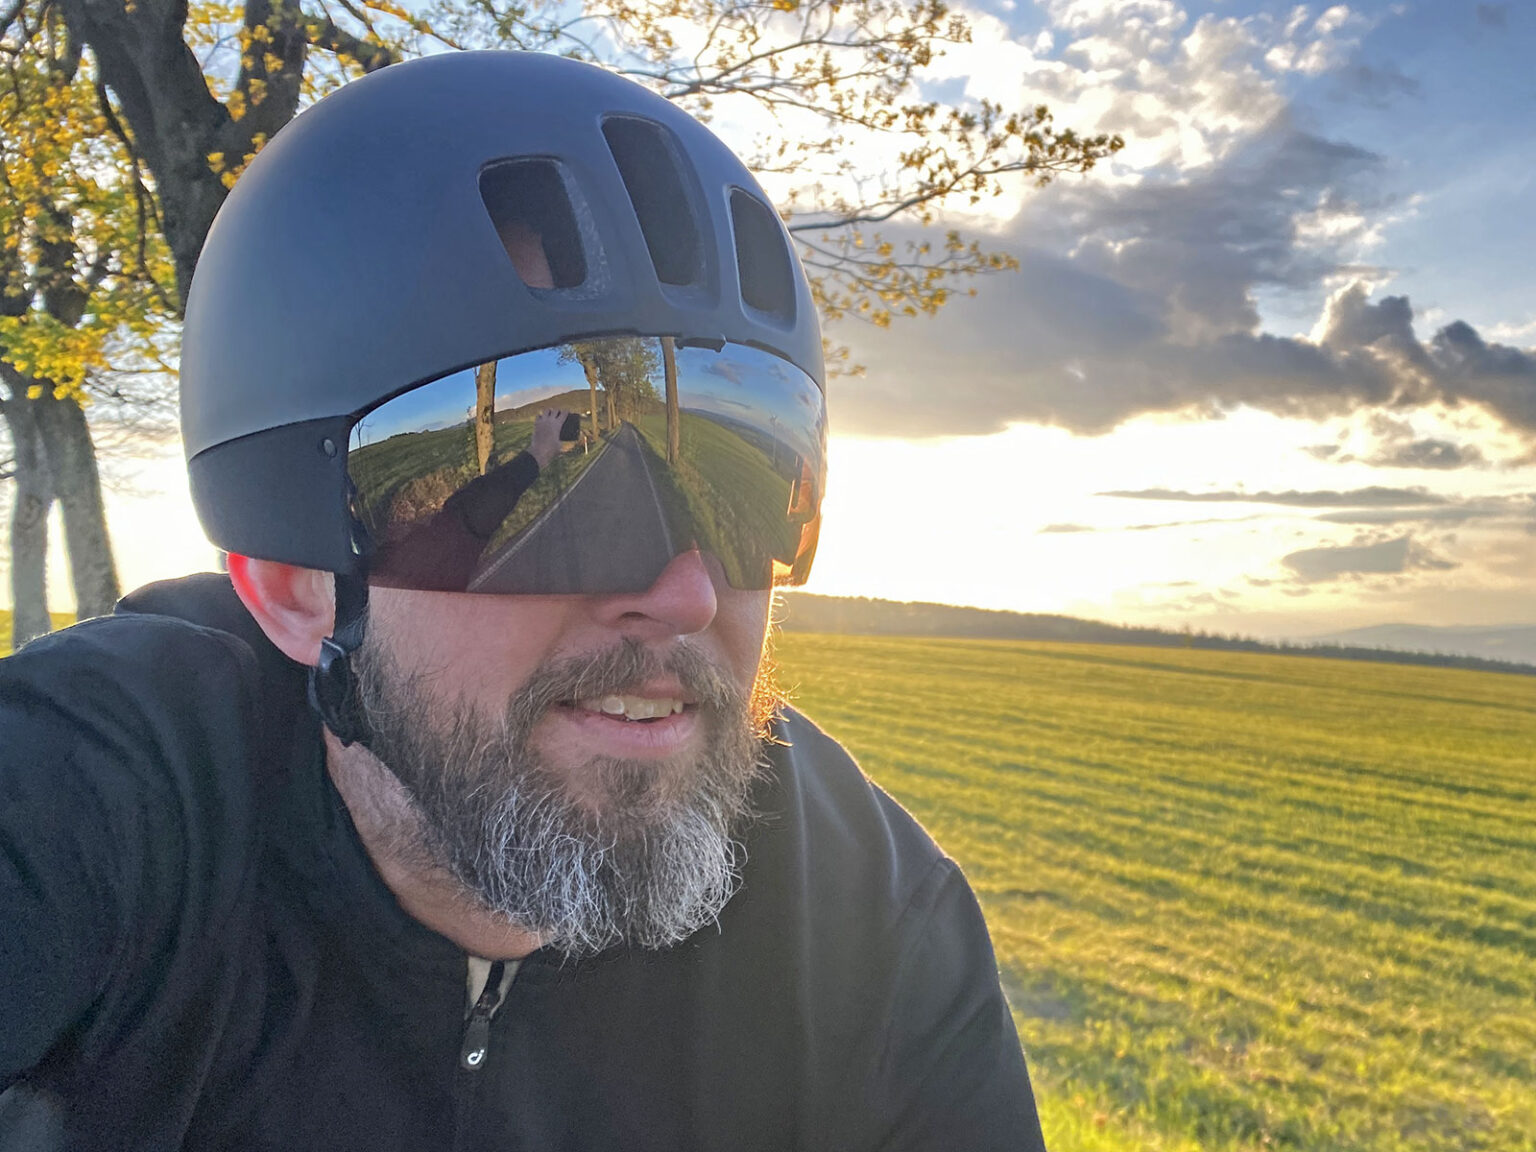 POC Procen Air aero road race helmet Review, bulbous selfie